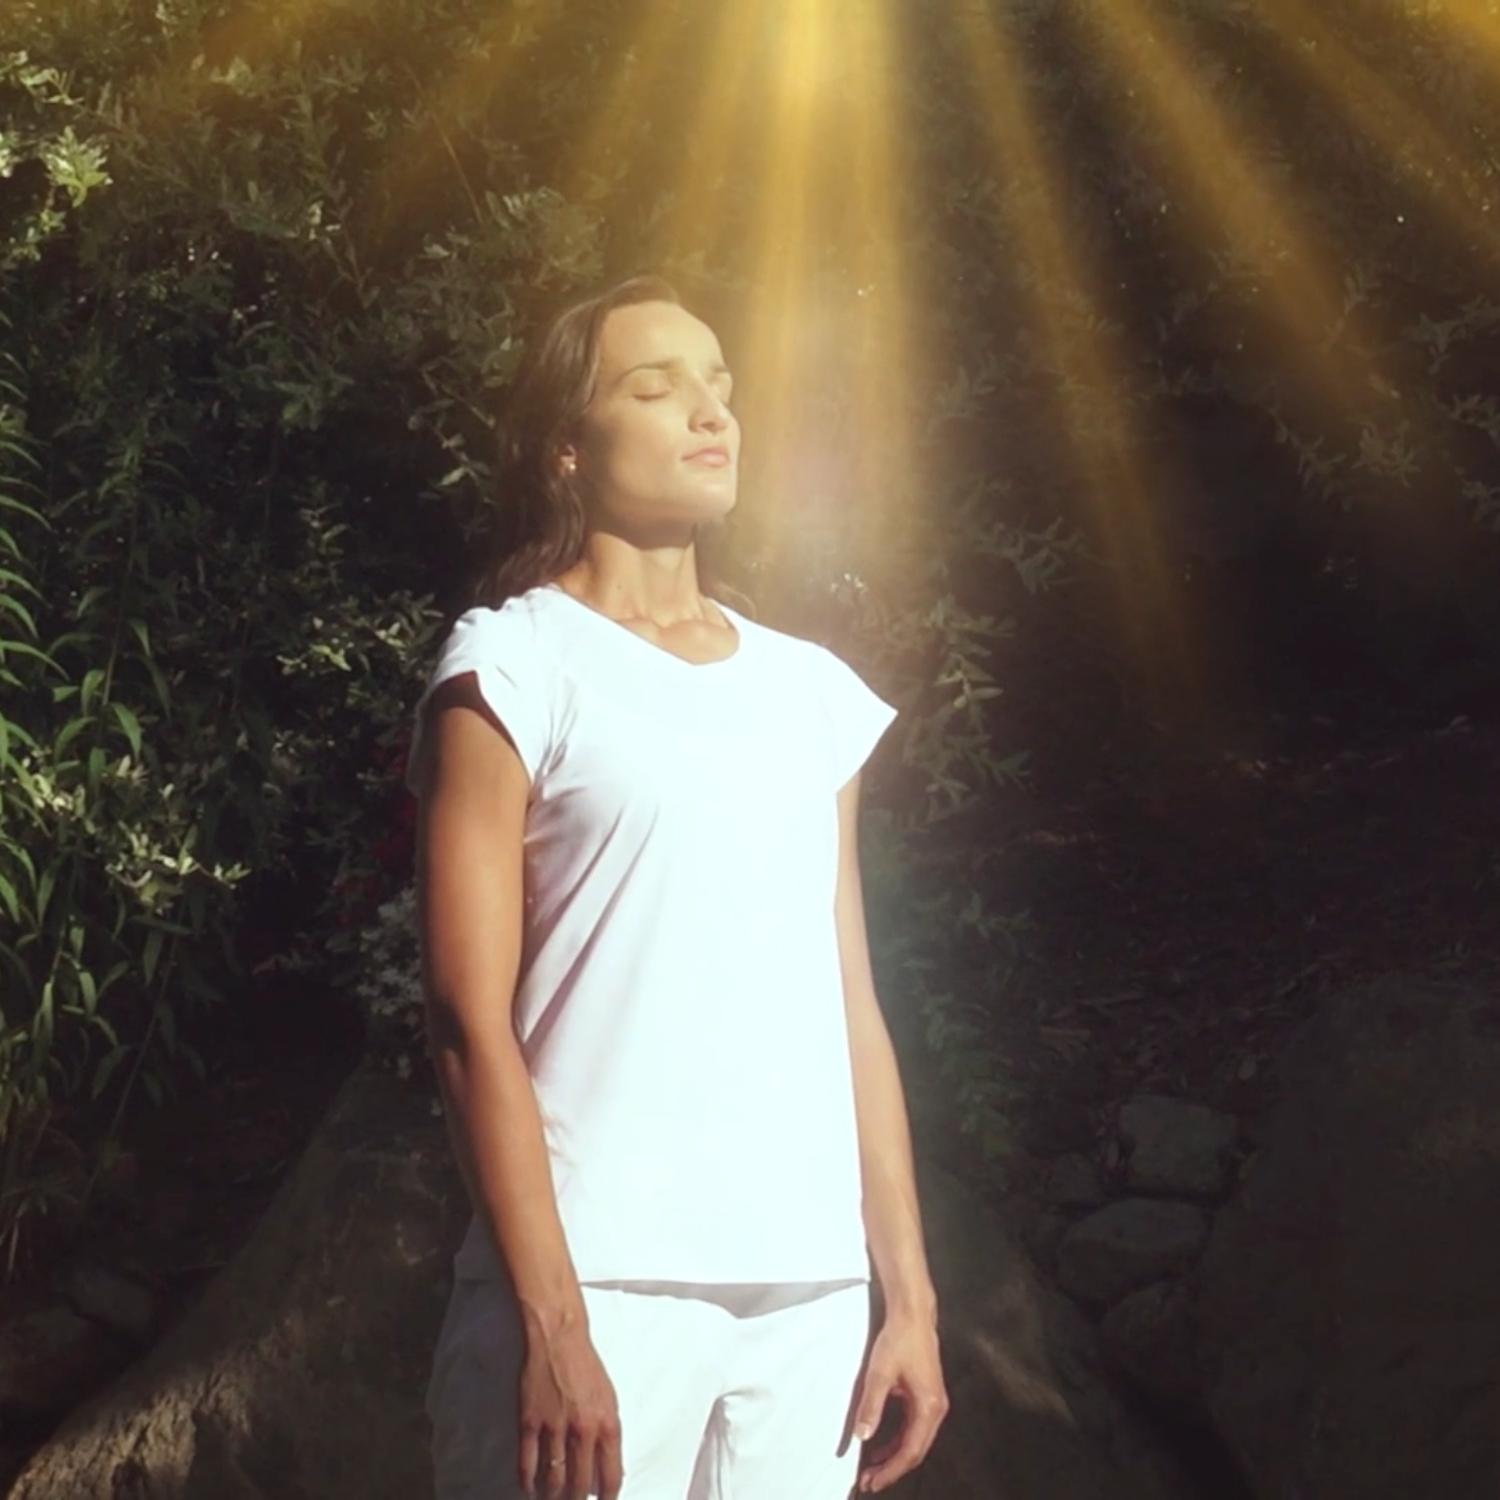 El sol radiante - Angelica Yoga - Curso 1.11